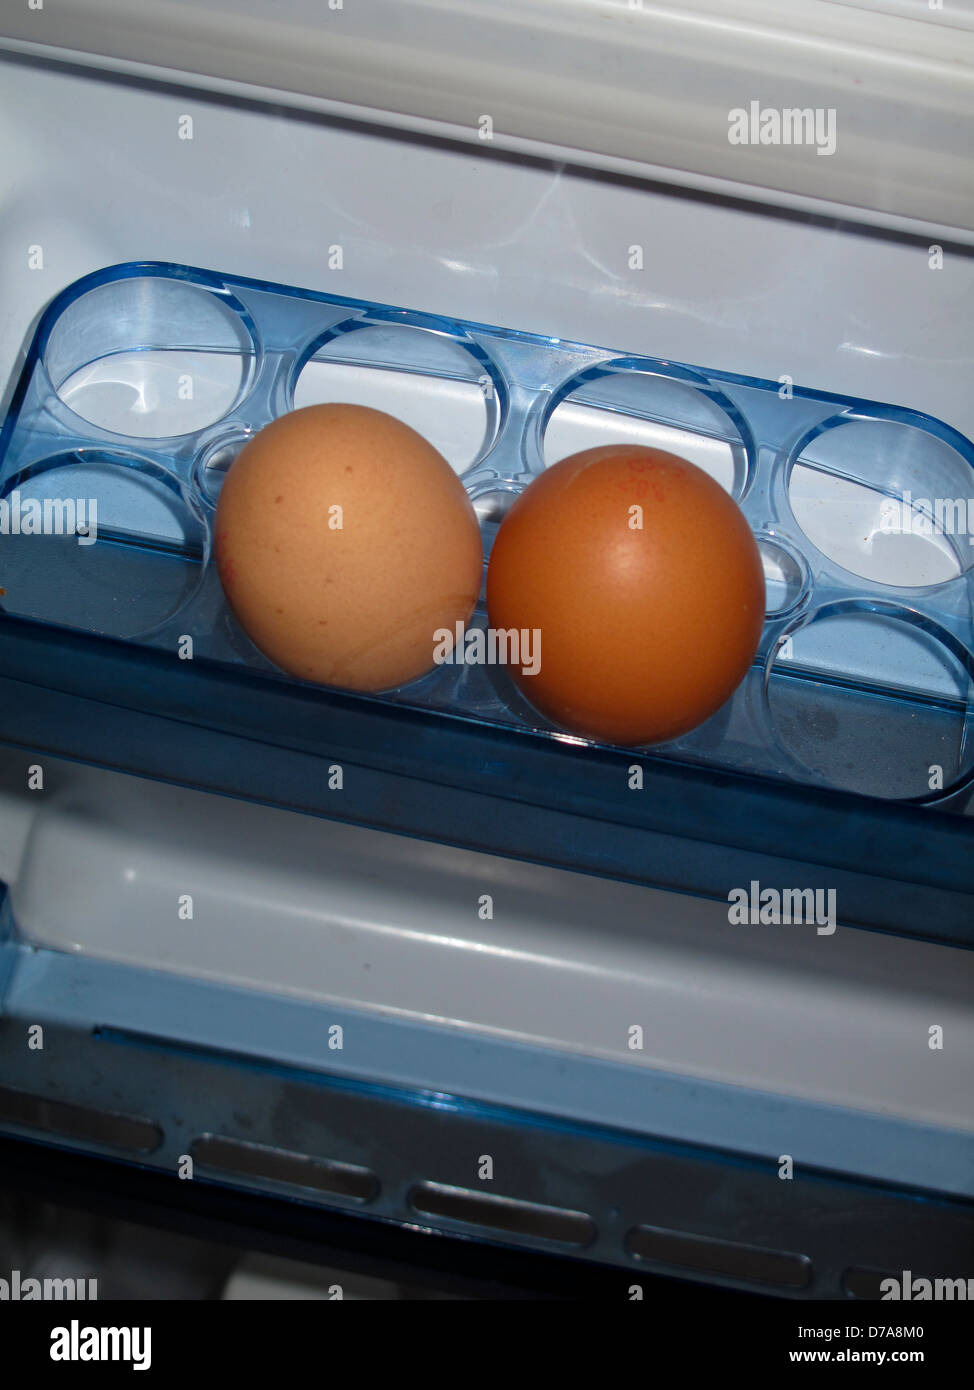 Eggs in refrigerator door rack Stock Photo